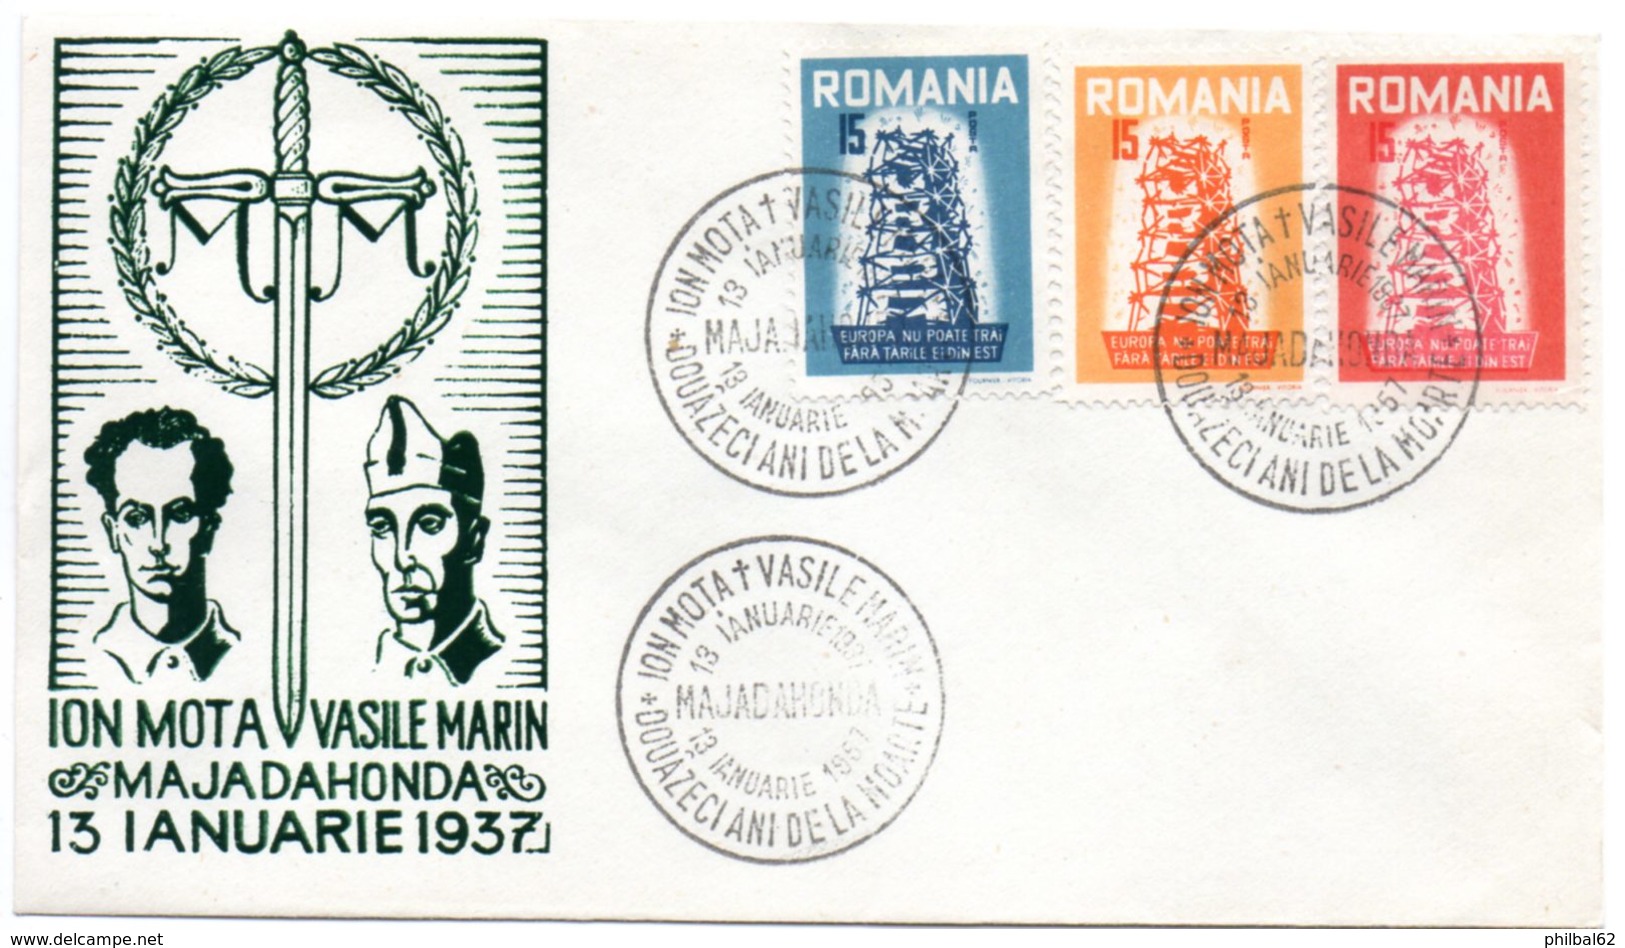 Europa.Roumanie. Ion Mota, Vasile Marin Majadahonda 13 Ianuarie 1937. Cachet à Date 13/01/1957. - Europese Instellingen